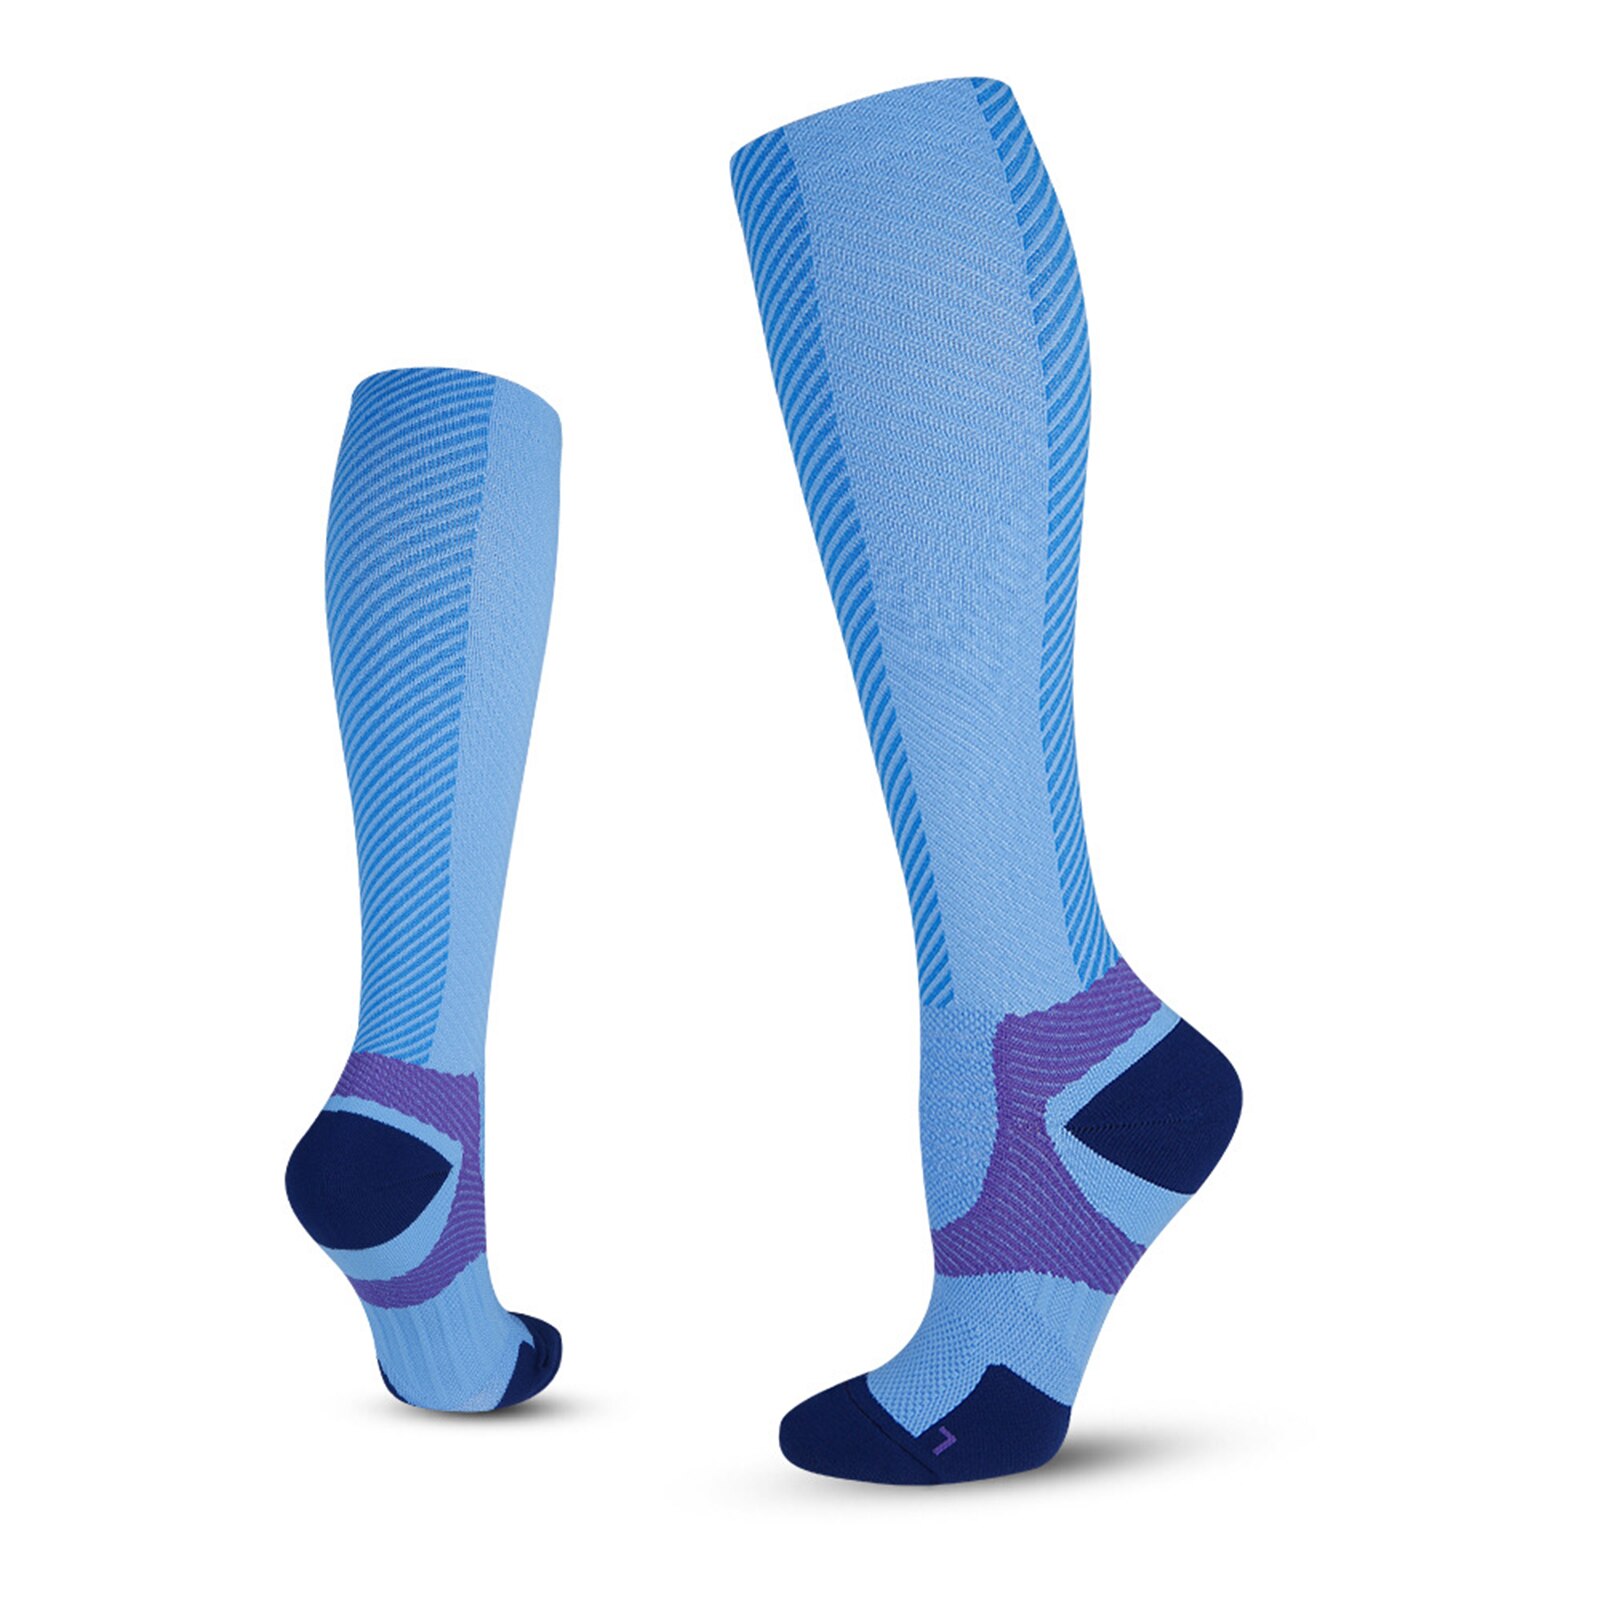 Mannen Vrouwen Been Ondersteuning Stretch Compressie Sokken Hieronder Knie Sokken Voor Mannen Professionele Sport Sokken Athletic Kousen